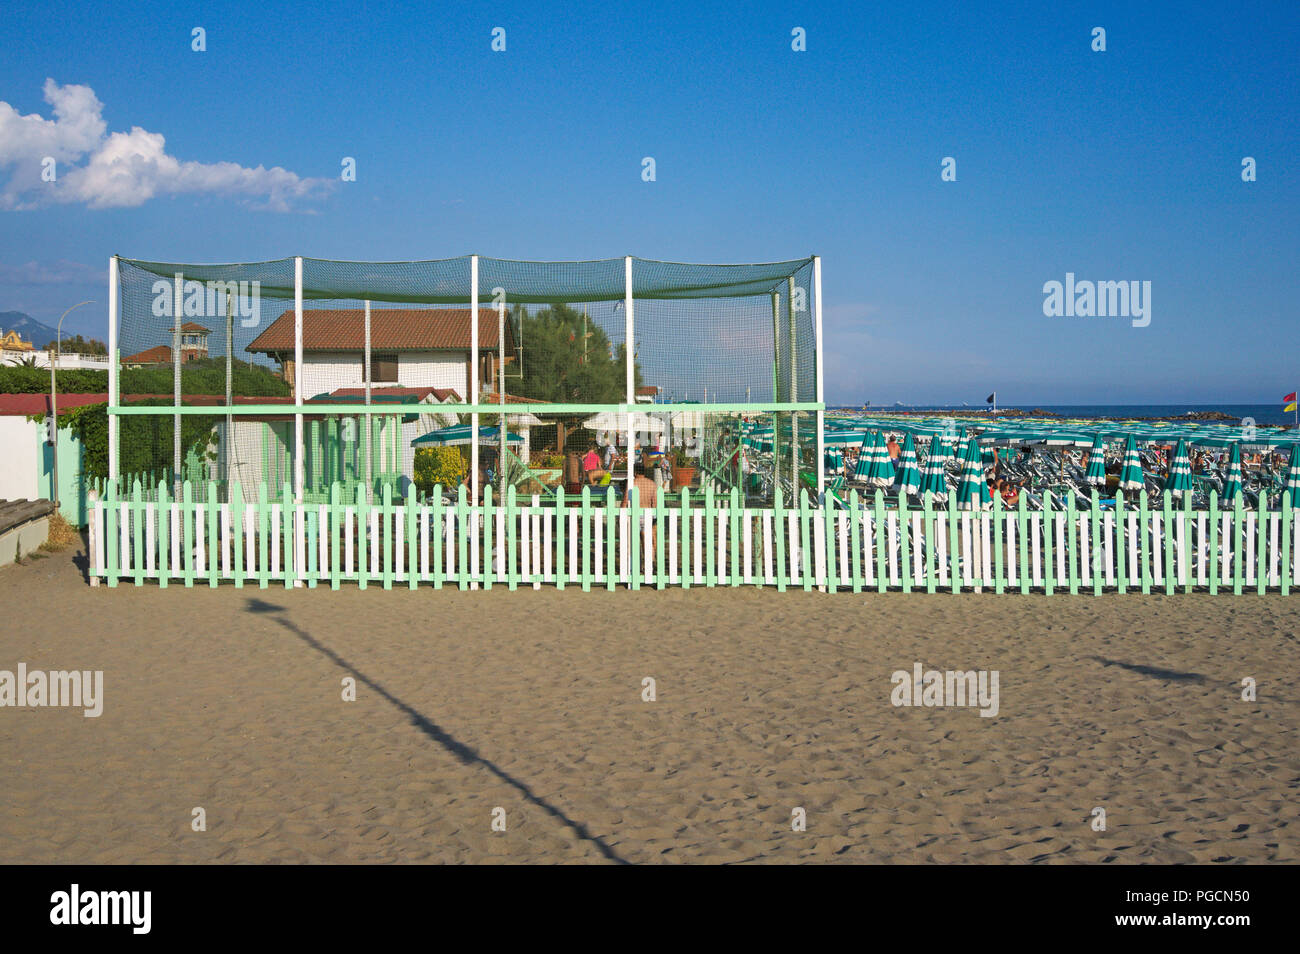 a beach in Marina di Massa, Versilia, Tuscany, Italy Stock Photo